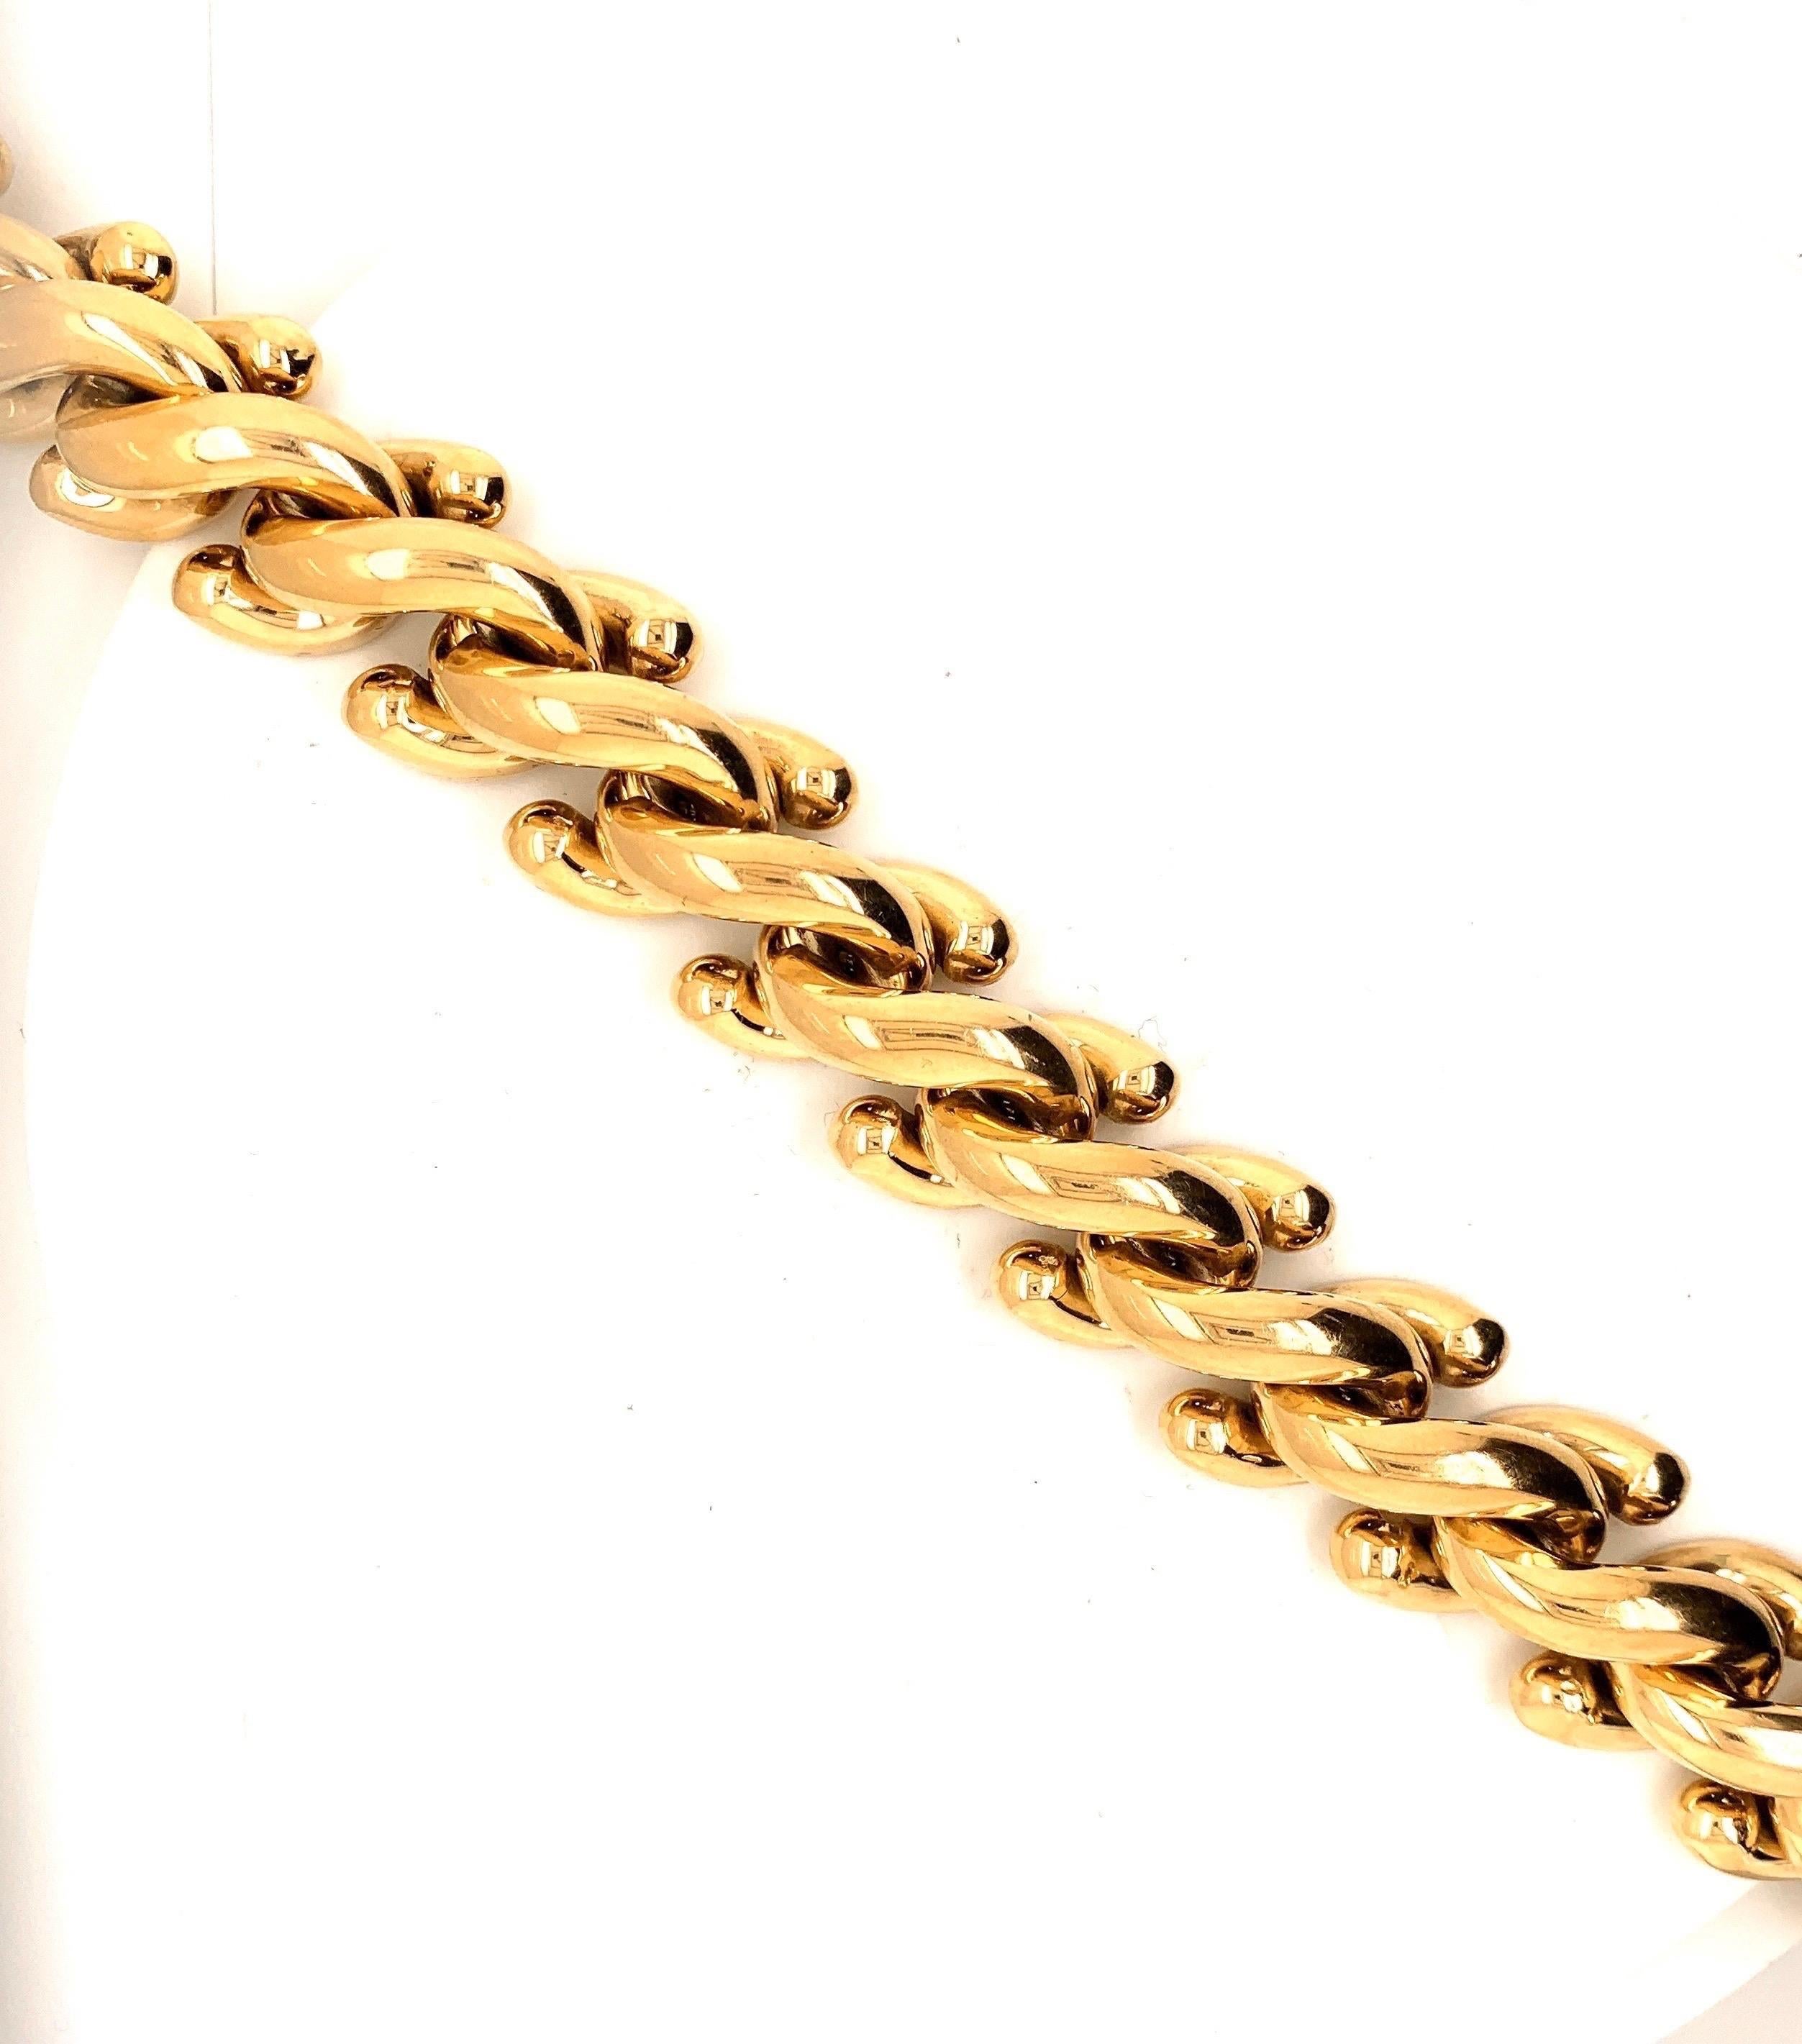 82 grammes d'or 14k, composent cet incroyable bracelet italien vintage.

Visites disponibles dans notre bureau de gros à NYC sur rendez-vous.